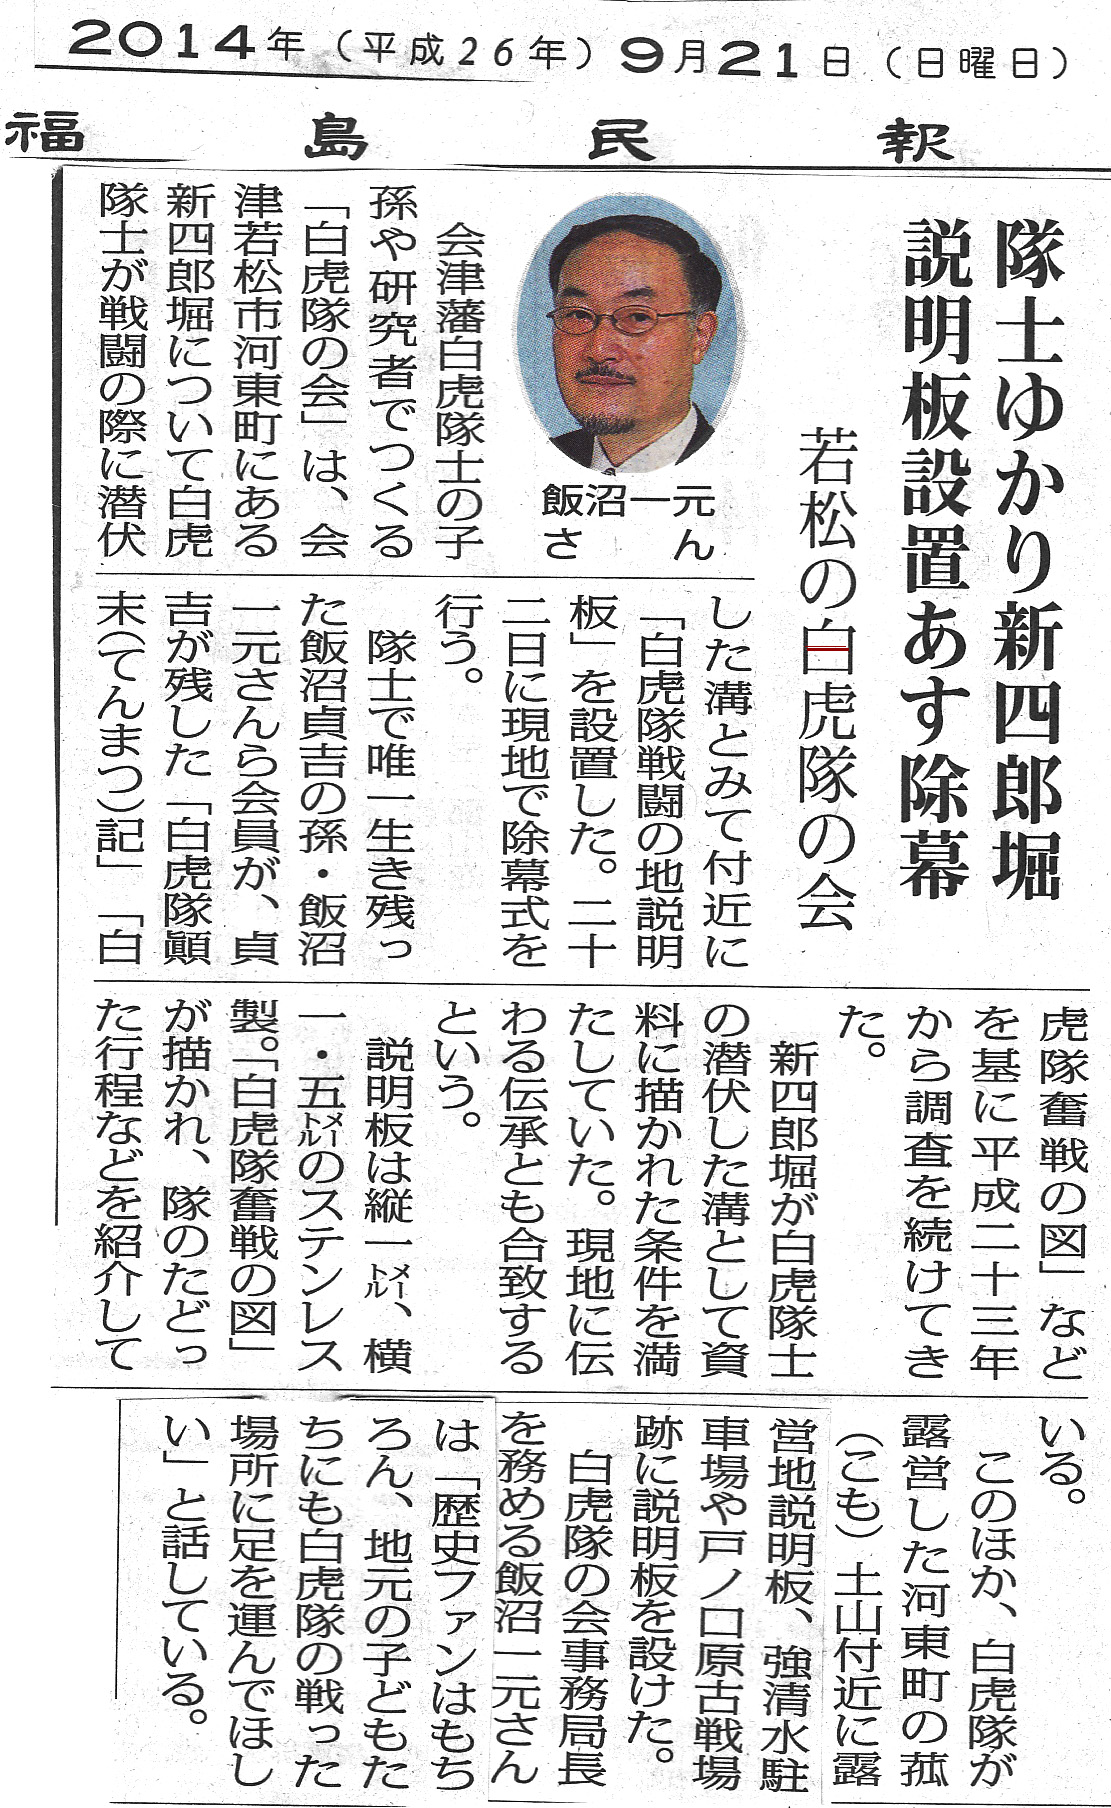 「福島民報」2014年9月21日